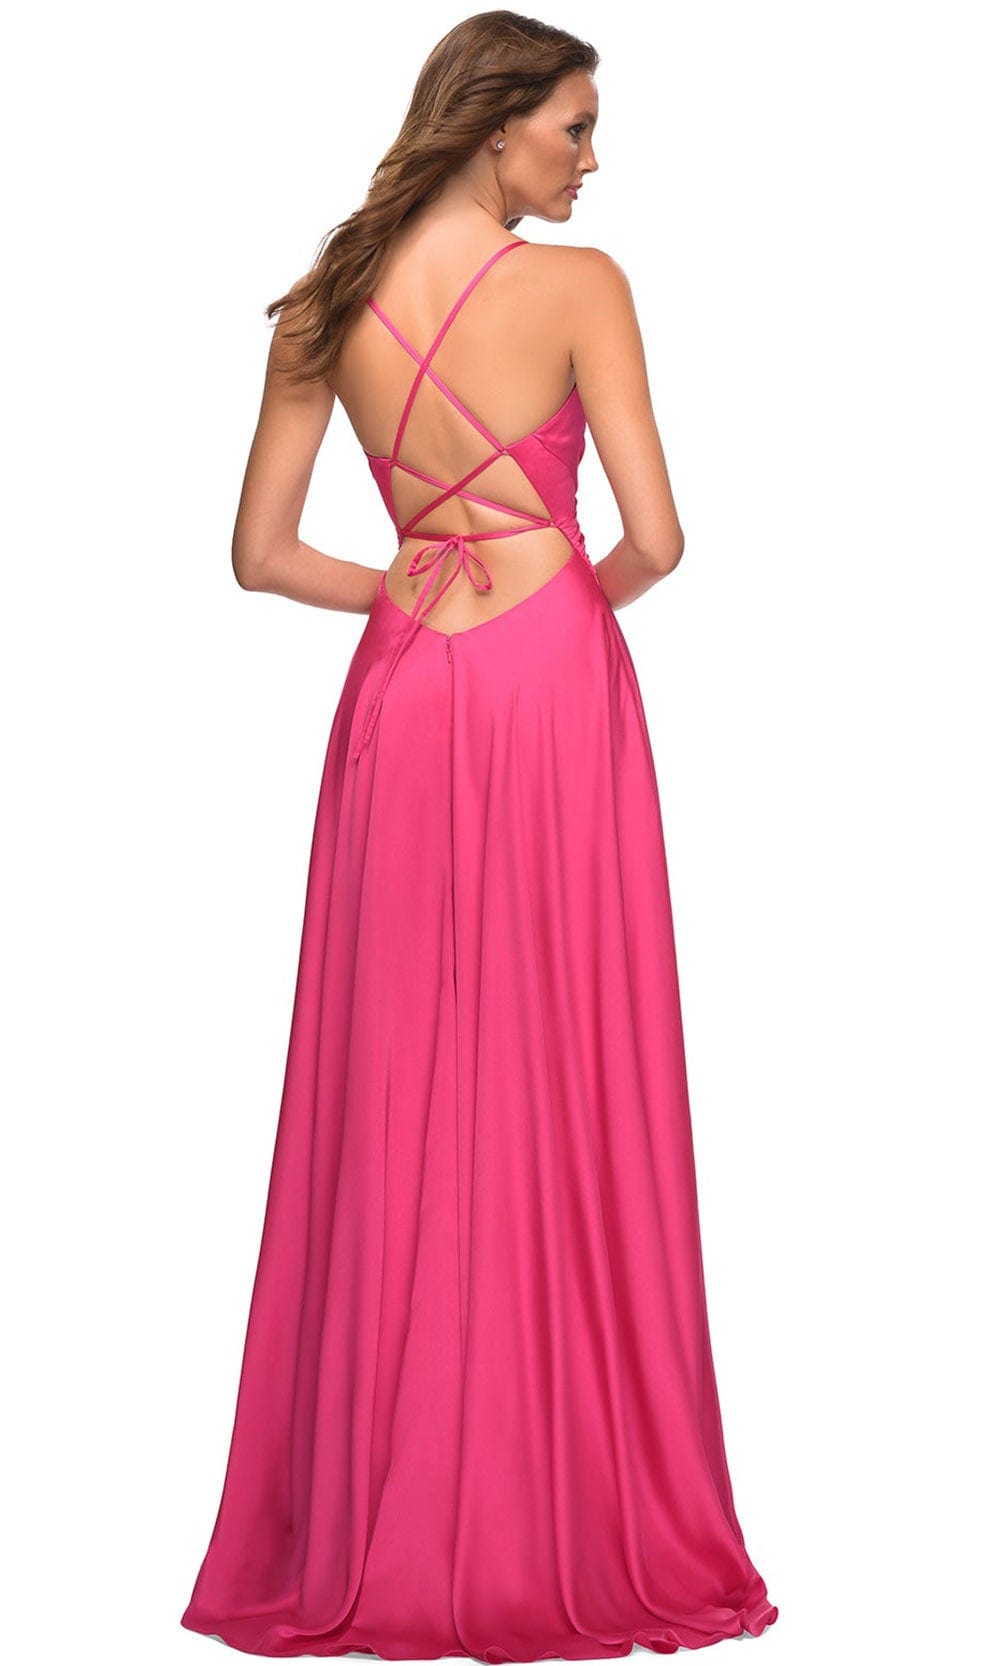 La Femme 30616 - Ruched V-Neck Evening Dress Special Occasion Dress